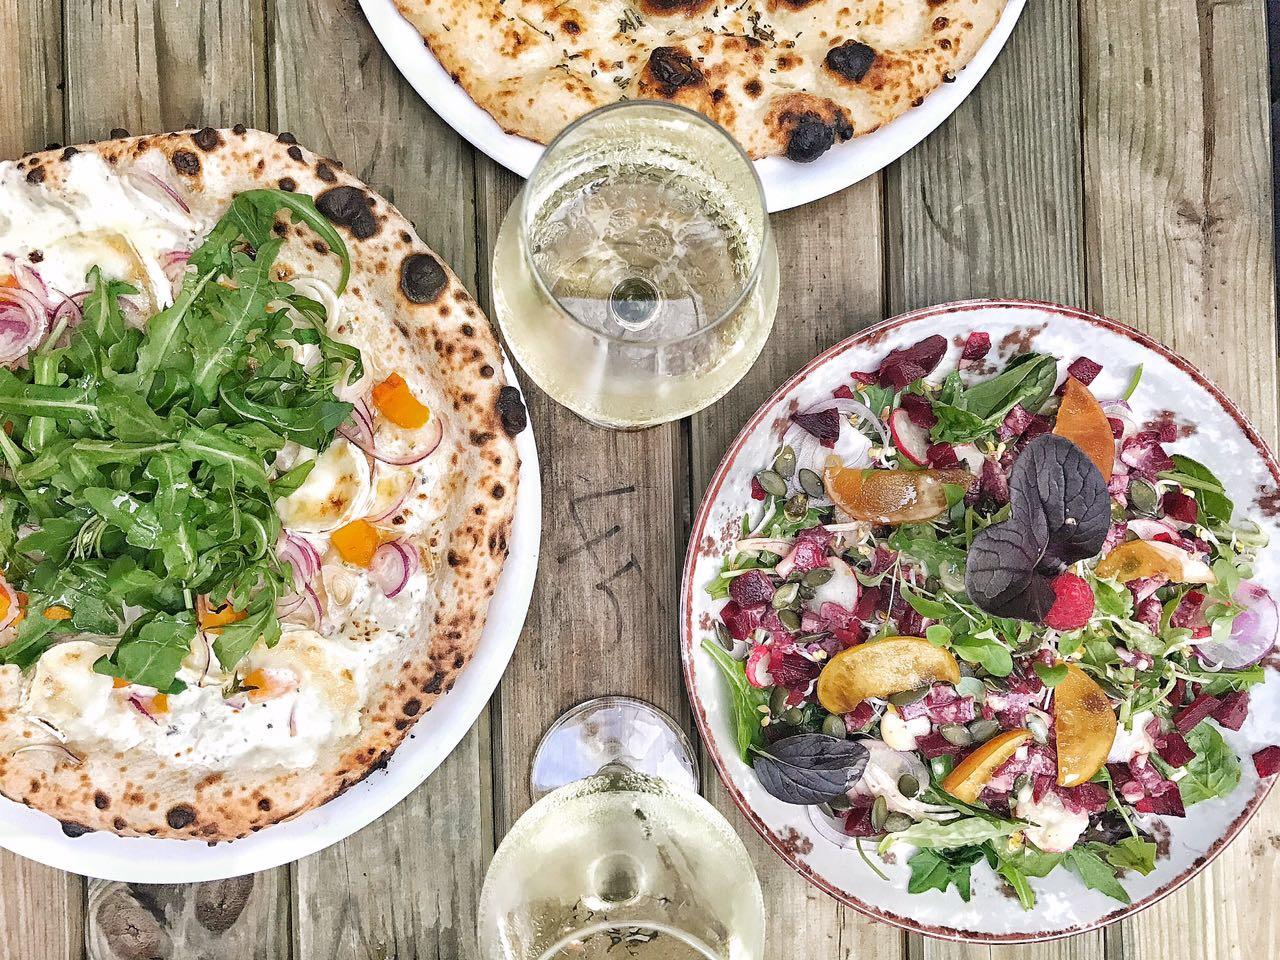 Wir lassen es uns gut gehen mit Rote Bete Salat und neapolitanischer Pizza. #foodlover #hamburg #jill